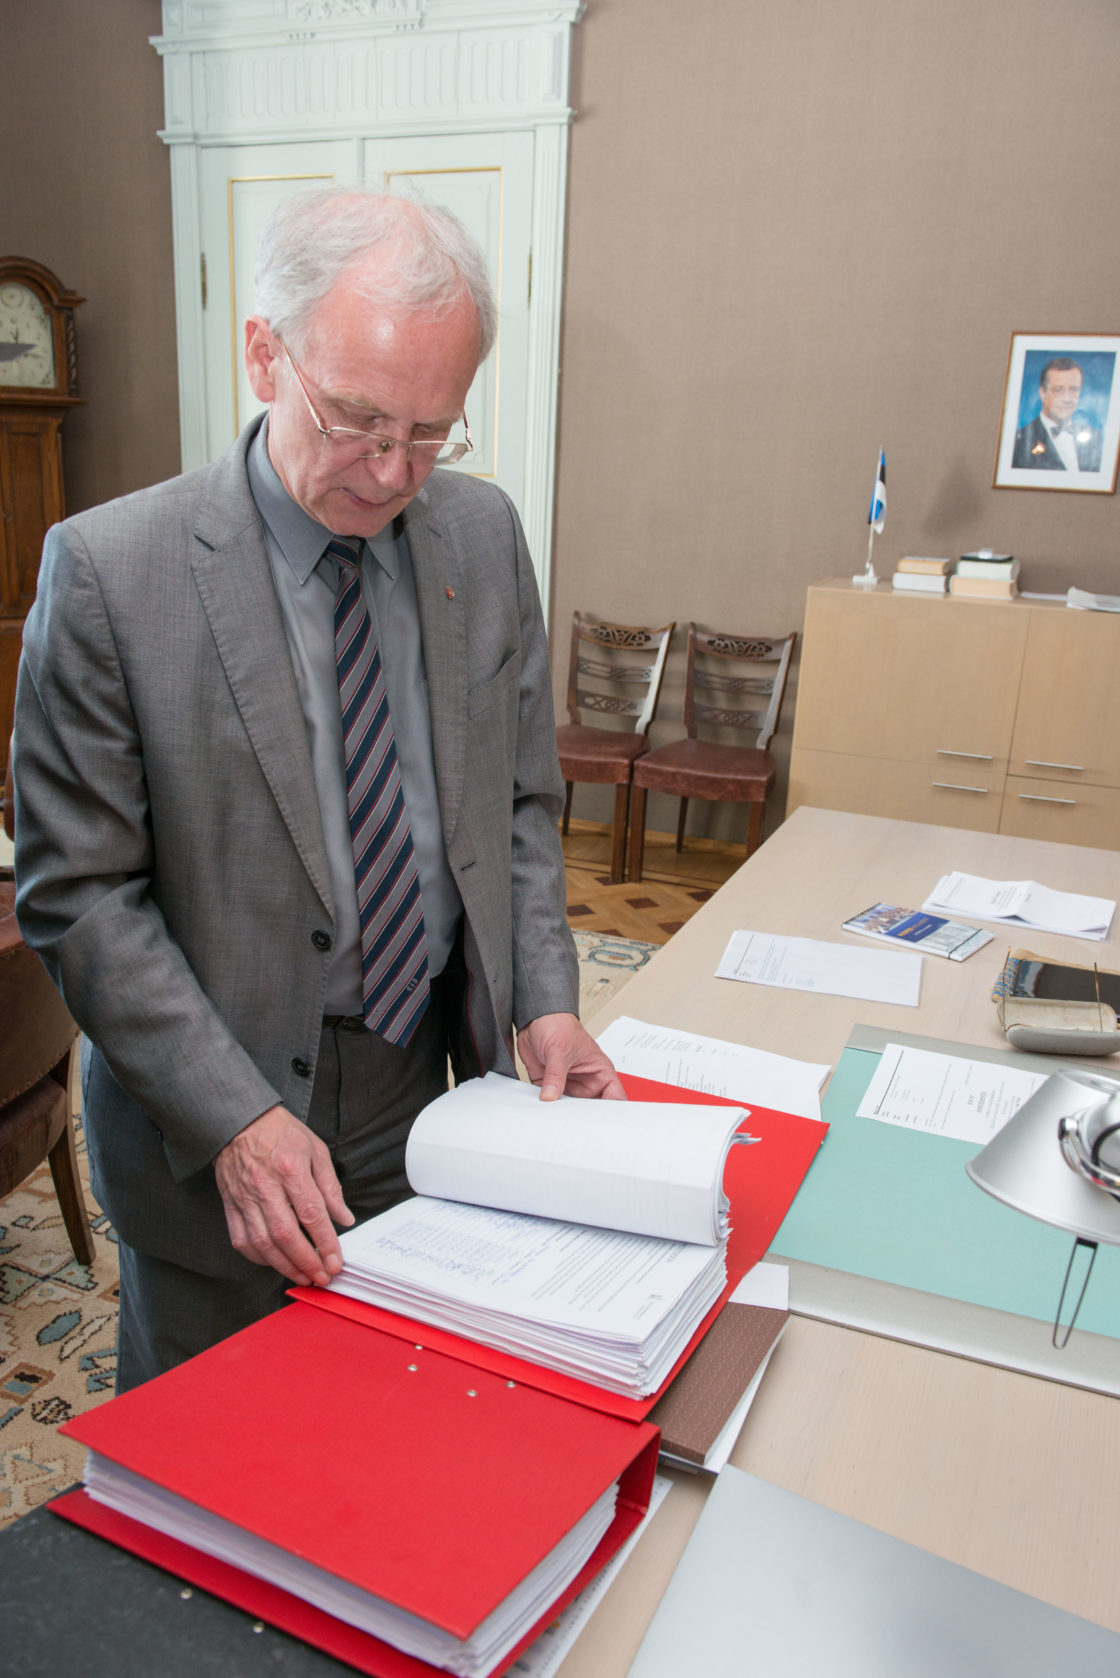 Riigikogu esimees Eiki Nestor võtab vastu Eesti Ametiühingute Keskliidu haigushüvitiste petitsiooni